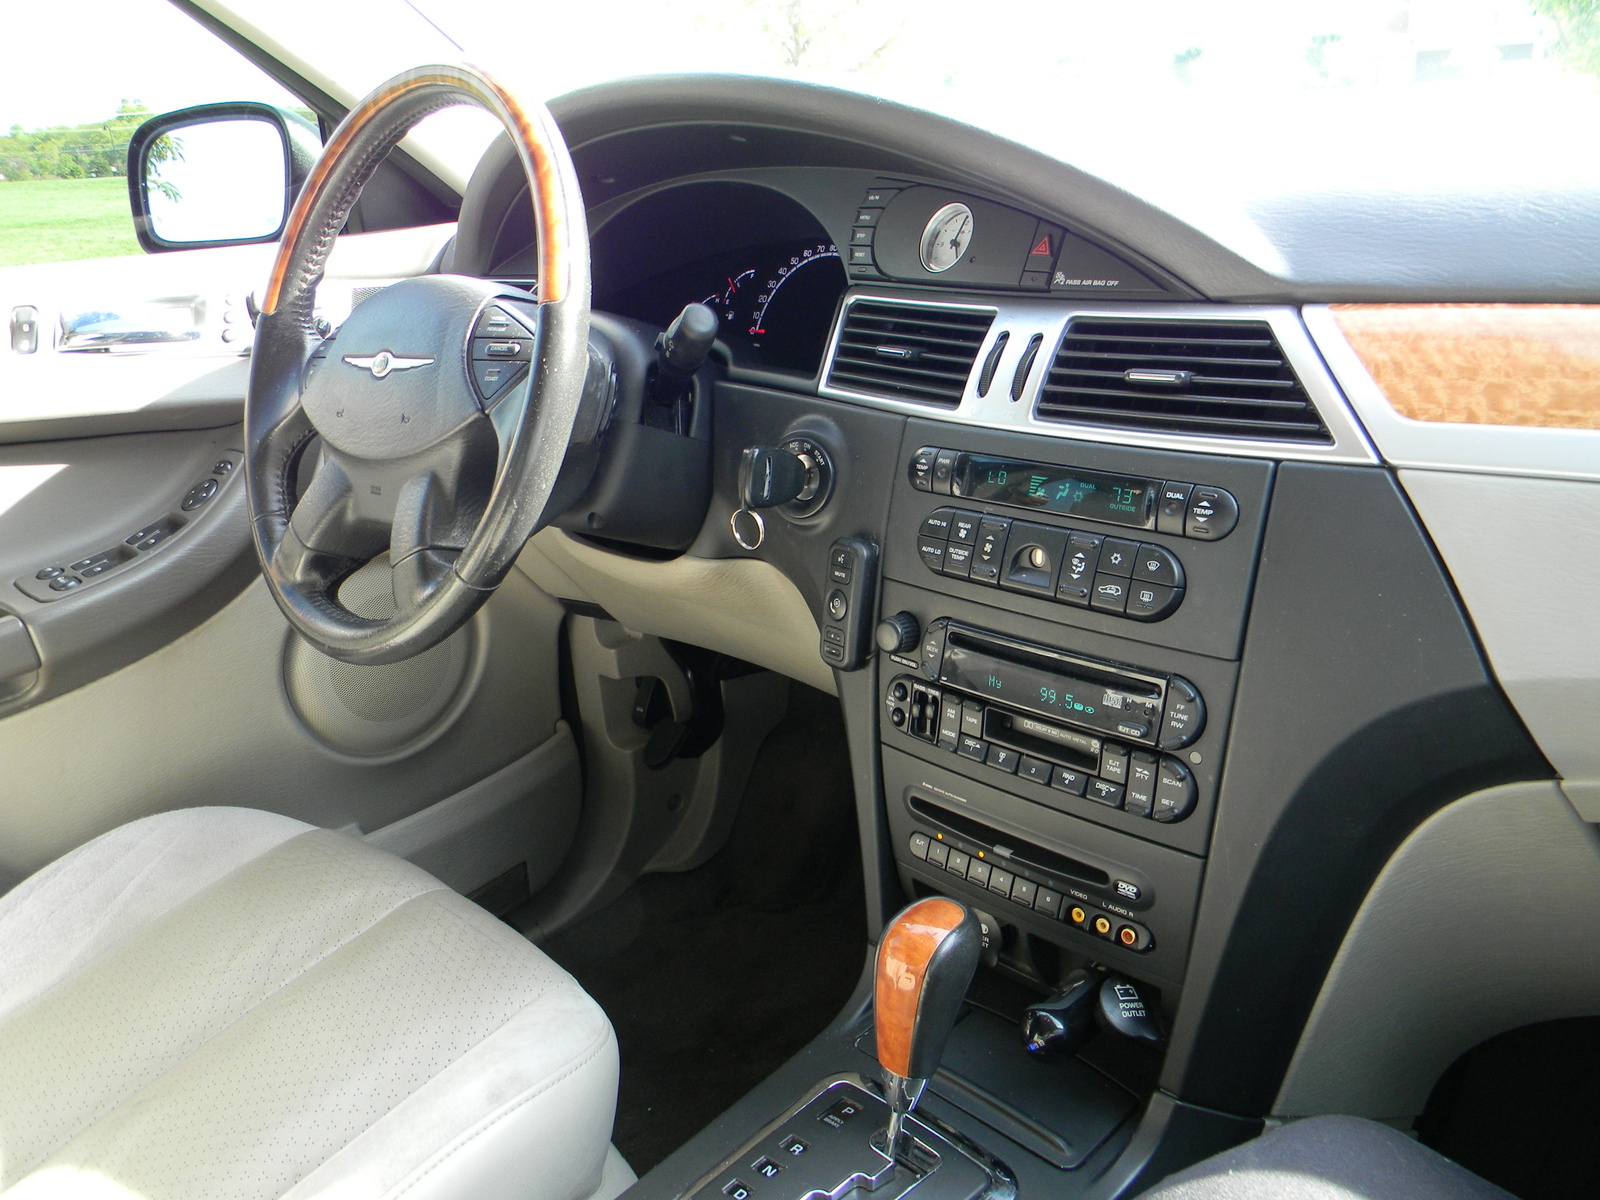 2006 Chrysler pacifica interior